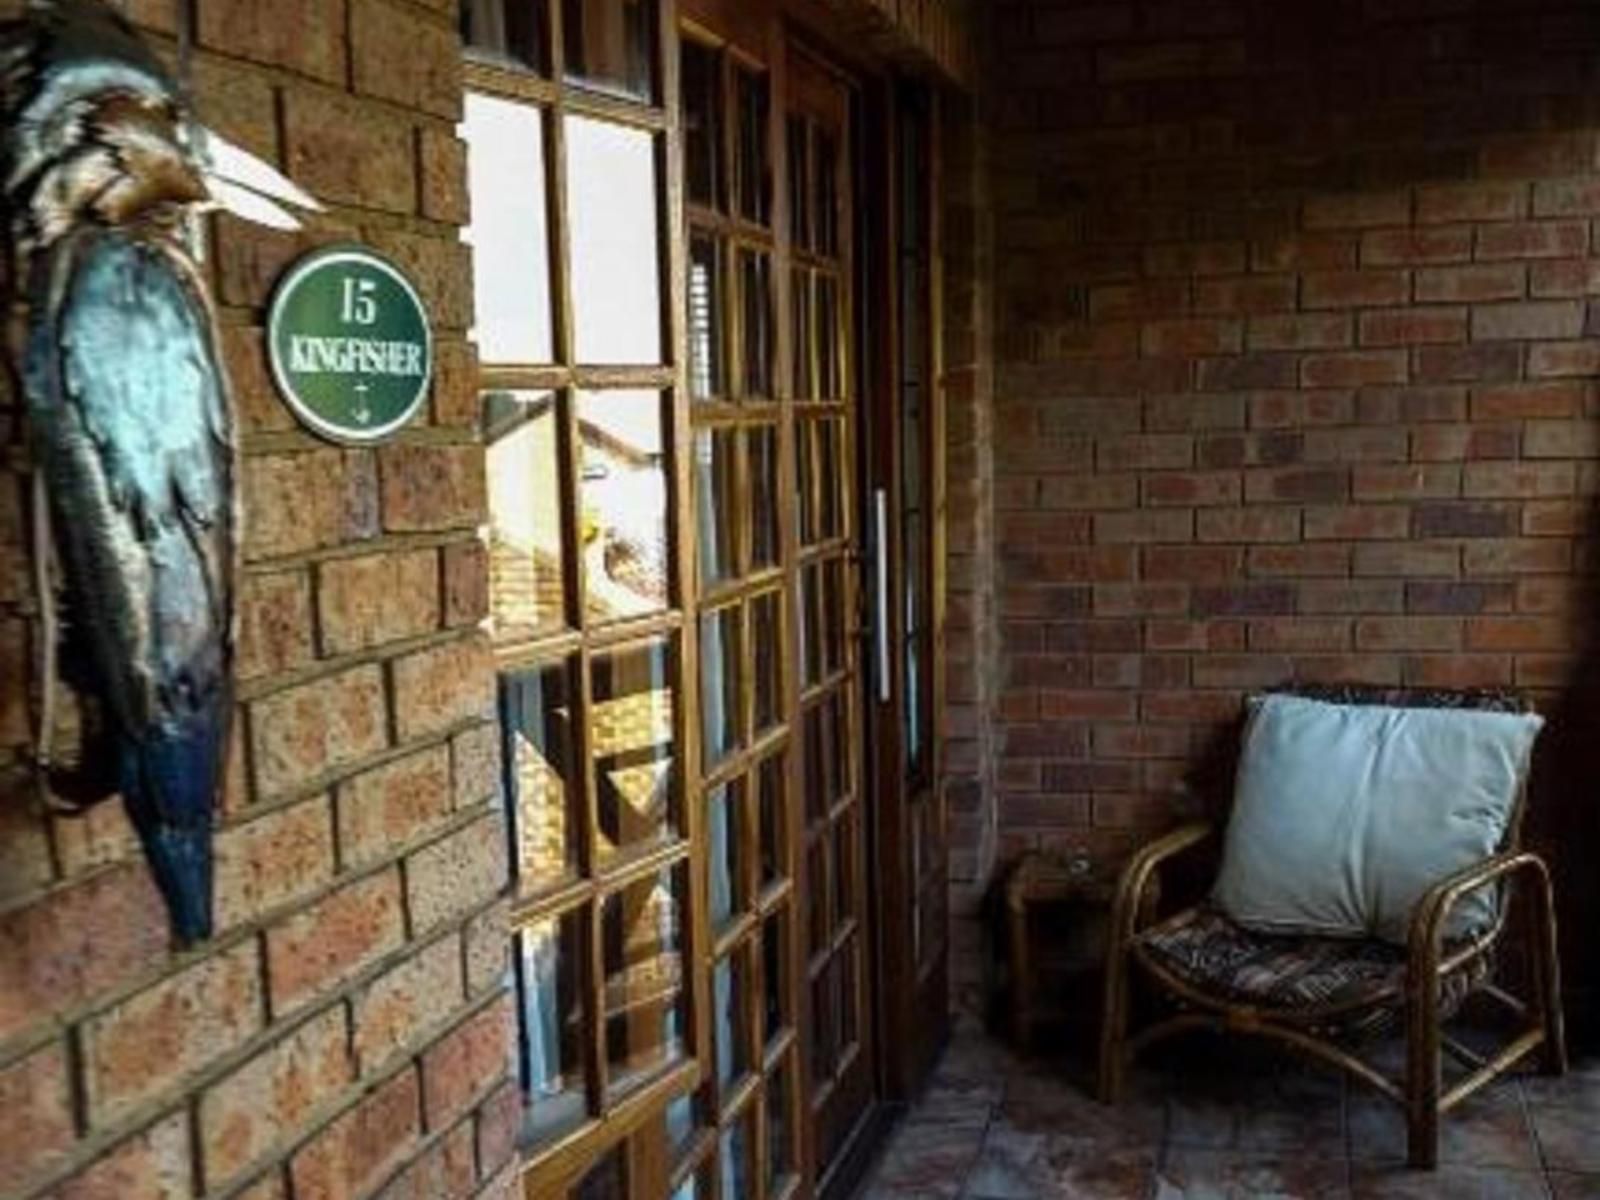 Aark Guest Lodge Vanderbijlpark Gauteng South Africa Door, Architecture, Wall, Brick Texture, Texture